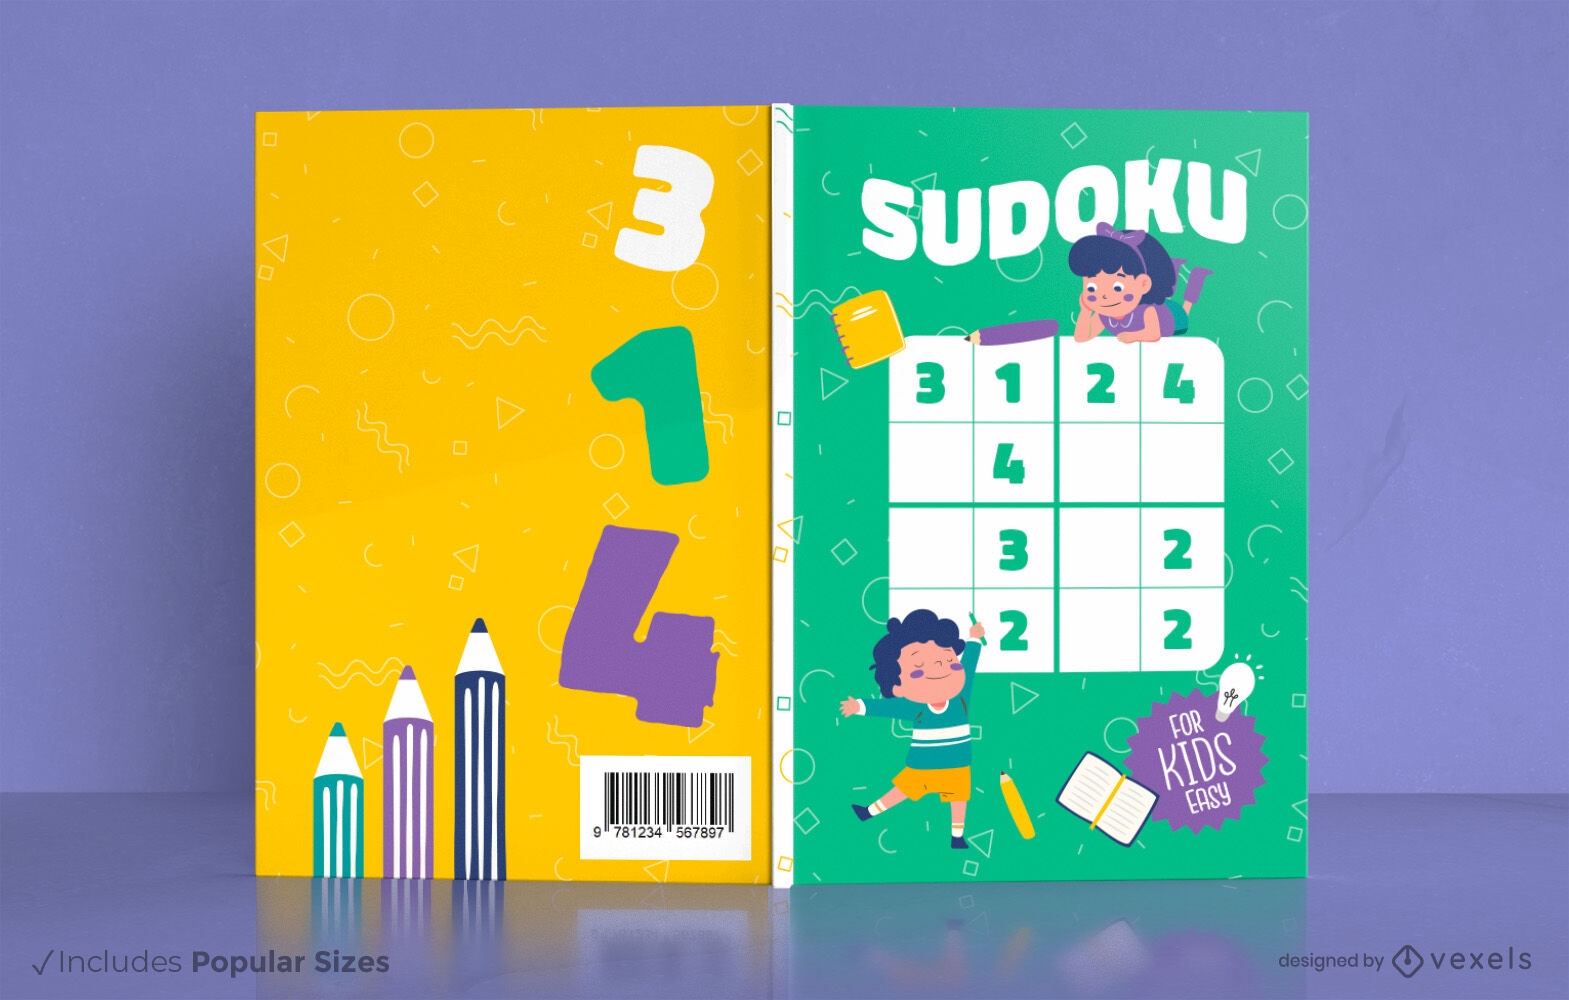 Crian?as fazendo design de capa de livro sudoku